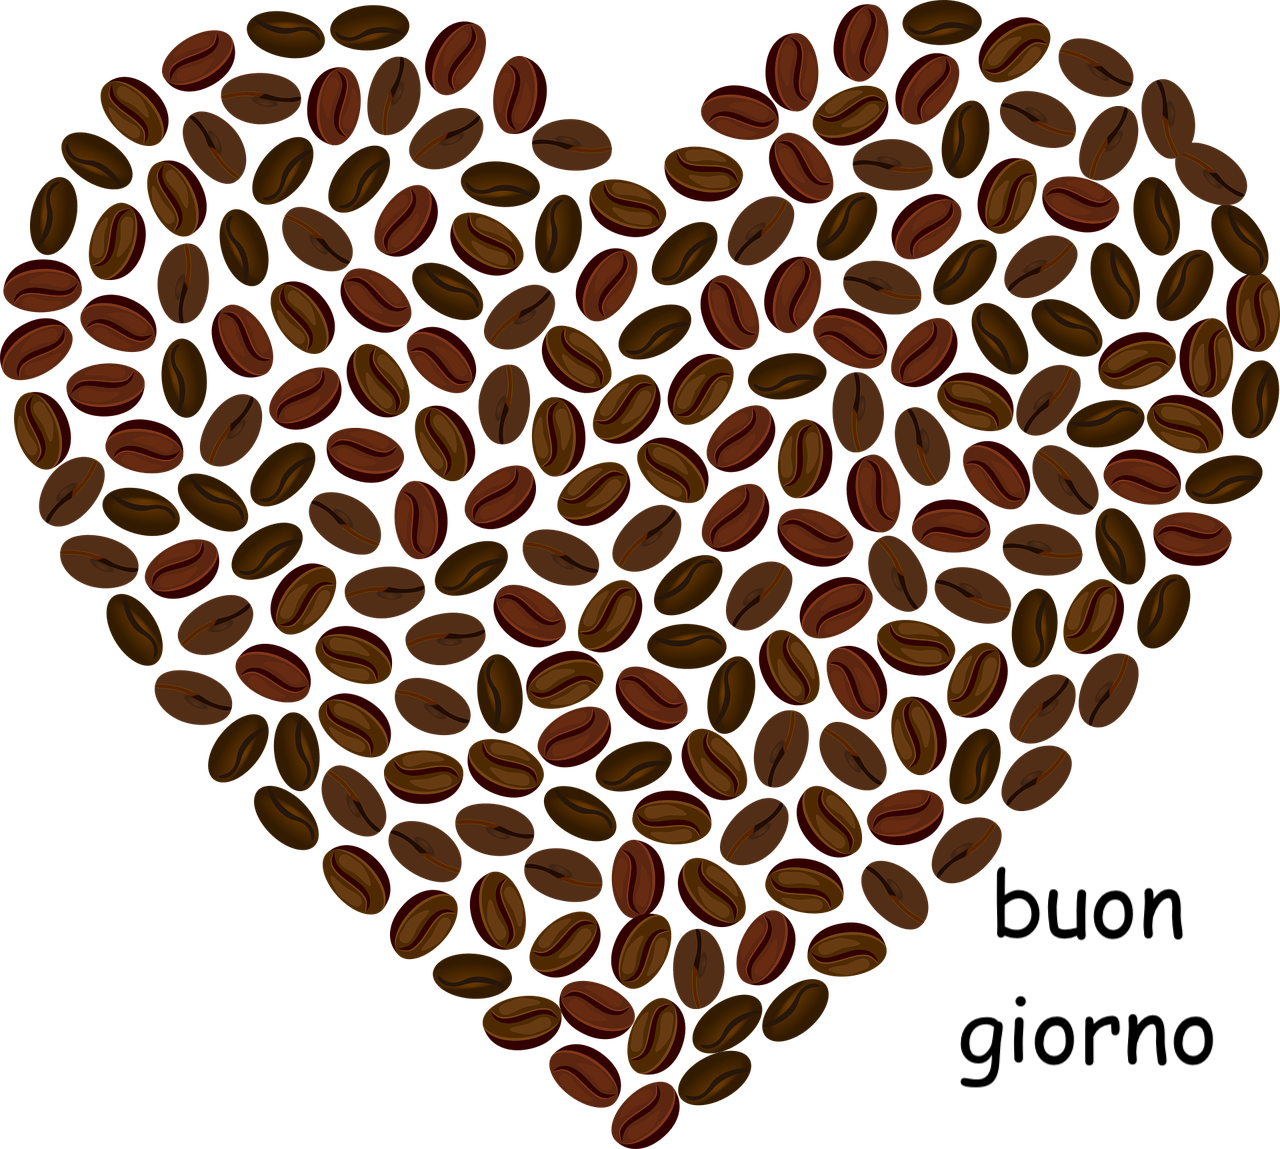 un cuore per augurare buongiorno caffè con amore